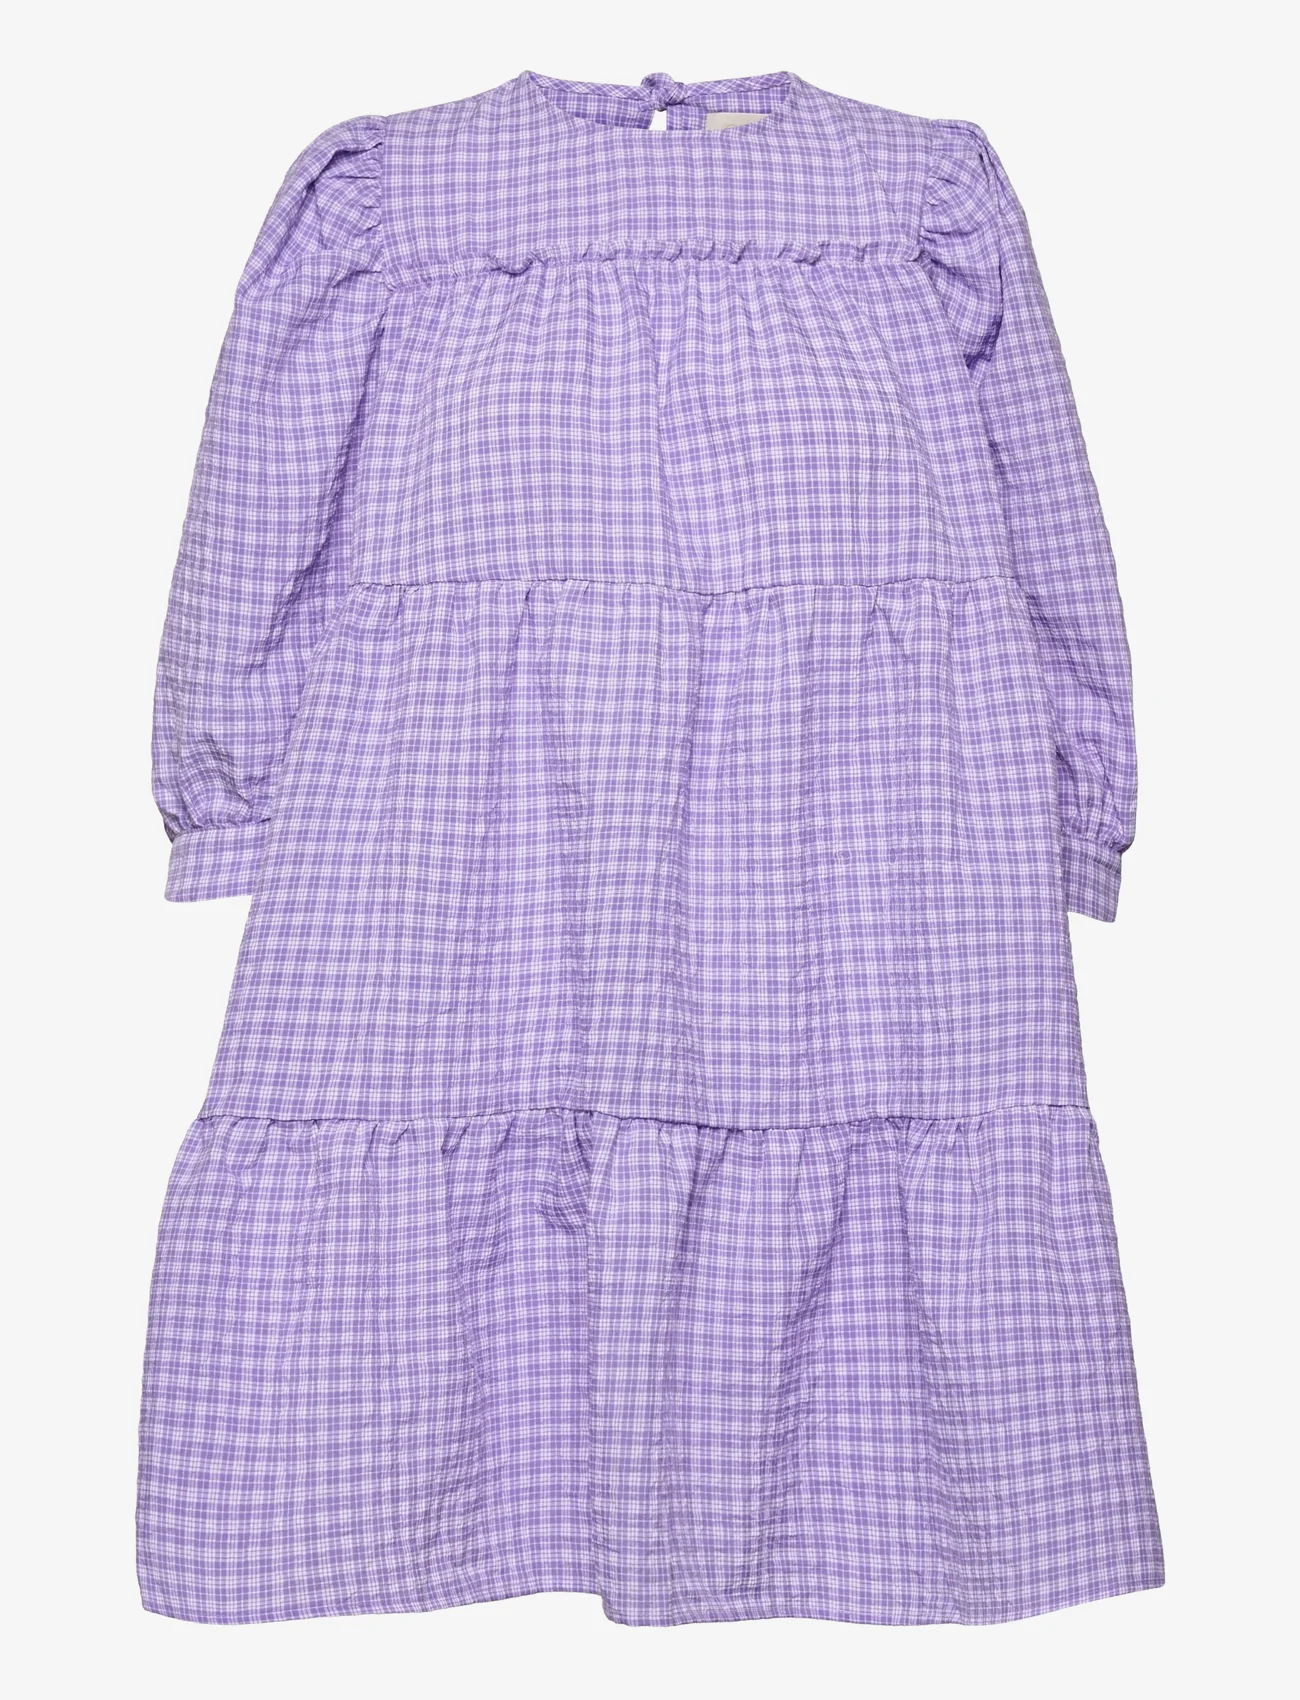 Minus - Rowen kjole - lyhyet mekot - purple checked - 0